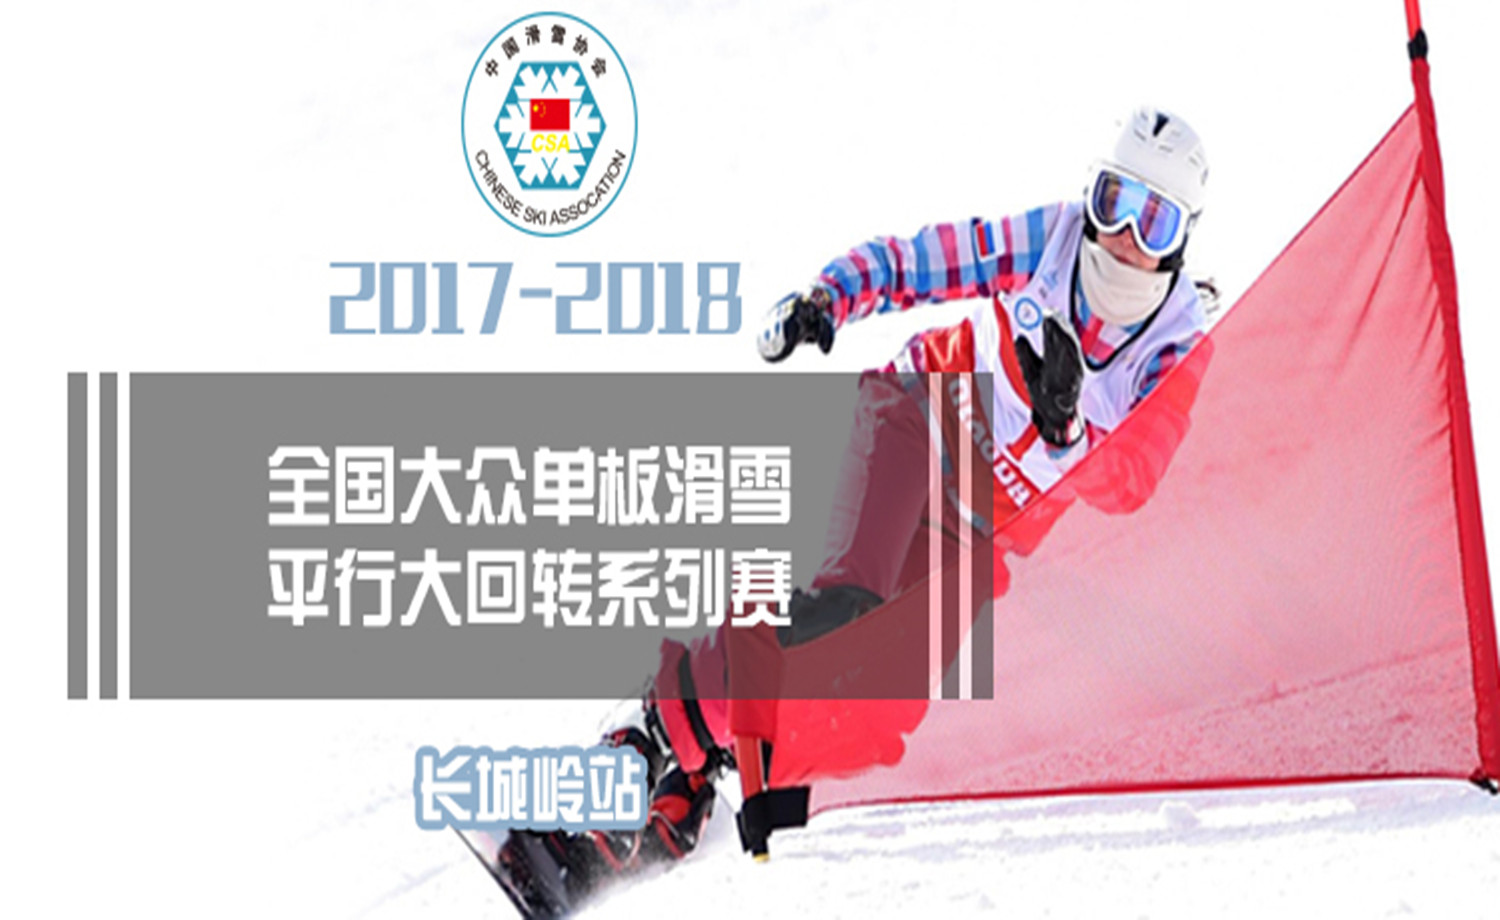 2017-2018年全国大众单板滑雪平行大回转系列赛-长城岭站